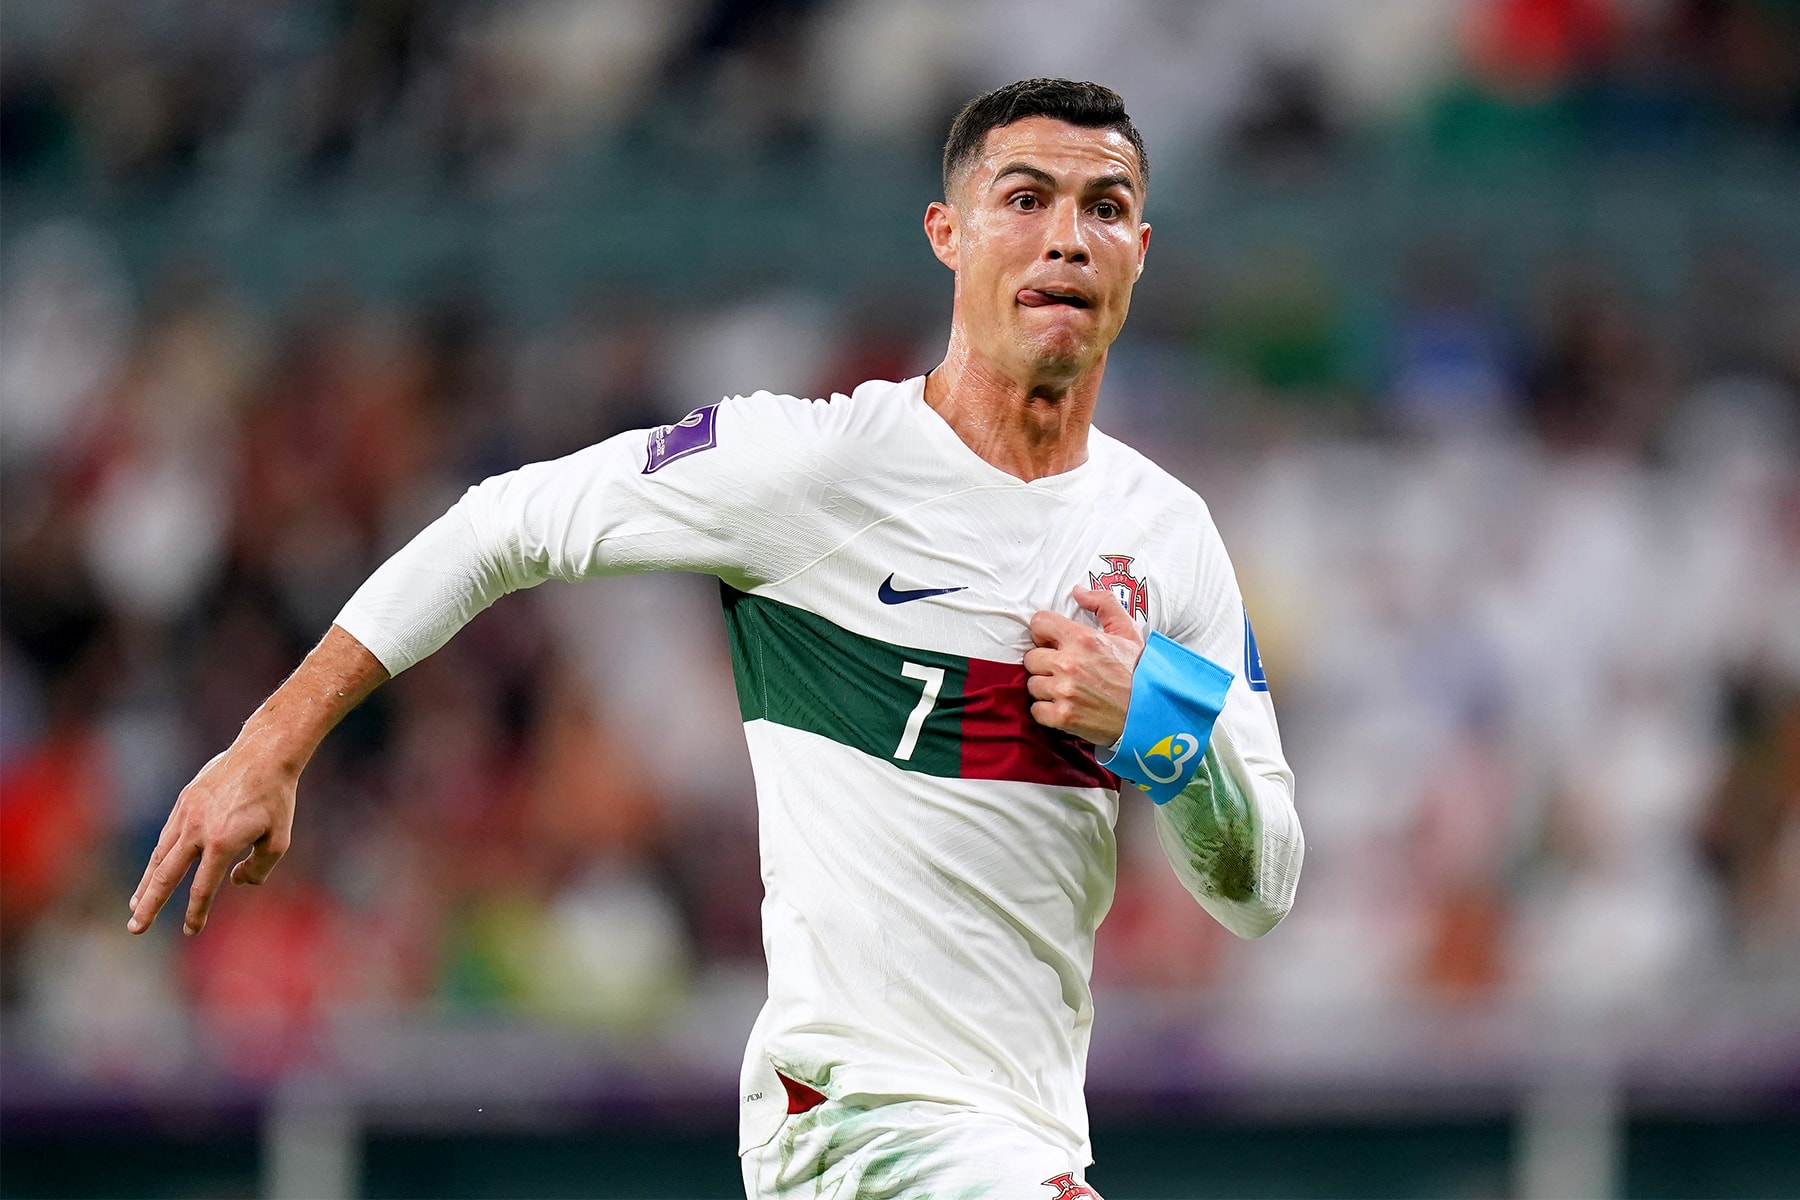 消息稱 Cristiano Ronaldo 以 2.5 年 €5 億歐元合約正式轉戰沙烏地阿拉伯